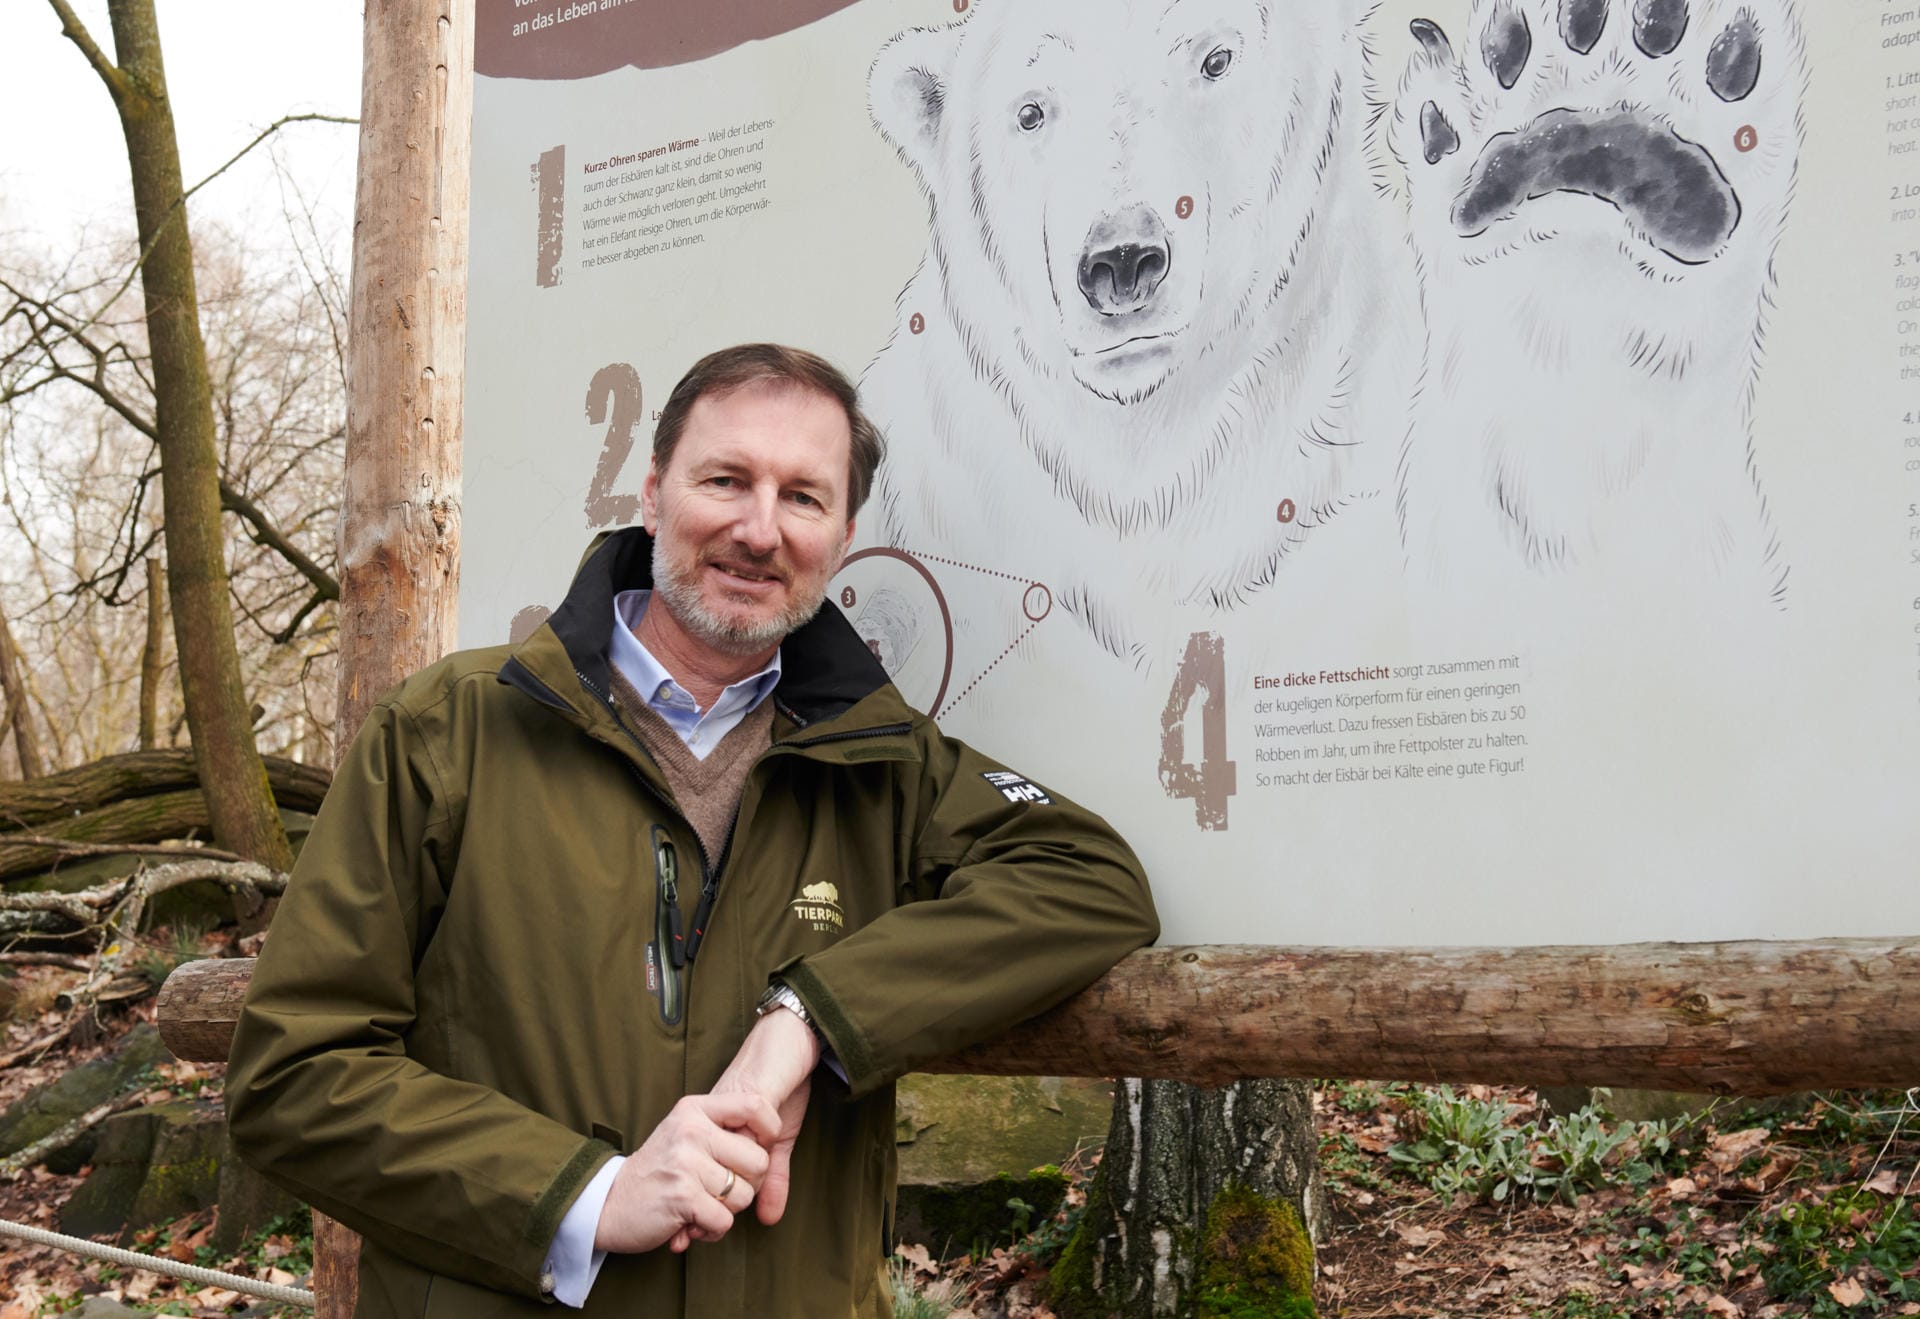 Tierpark-Direktor vor einem Info-Schild: Tierarzt Andreas Knieriem ist mit der Entwicklung des Eisbärennachwuchses "überaus zufrieden".